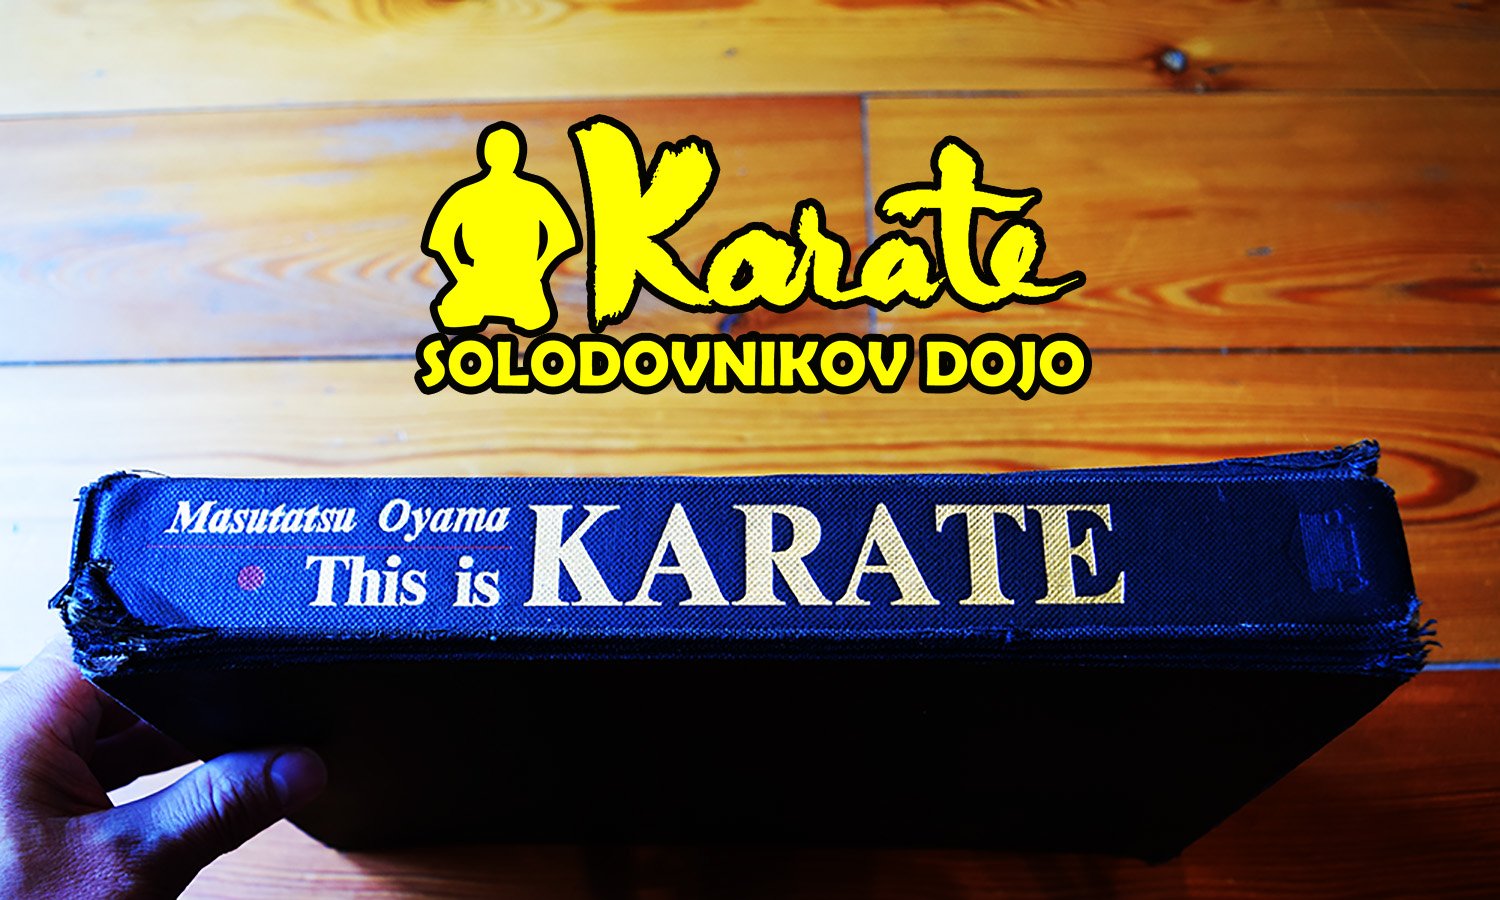 Это Каратэ книга Масутацу Ояма из Японии | This is a karate book by Masutatsu Oyama from Japan